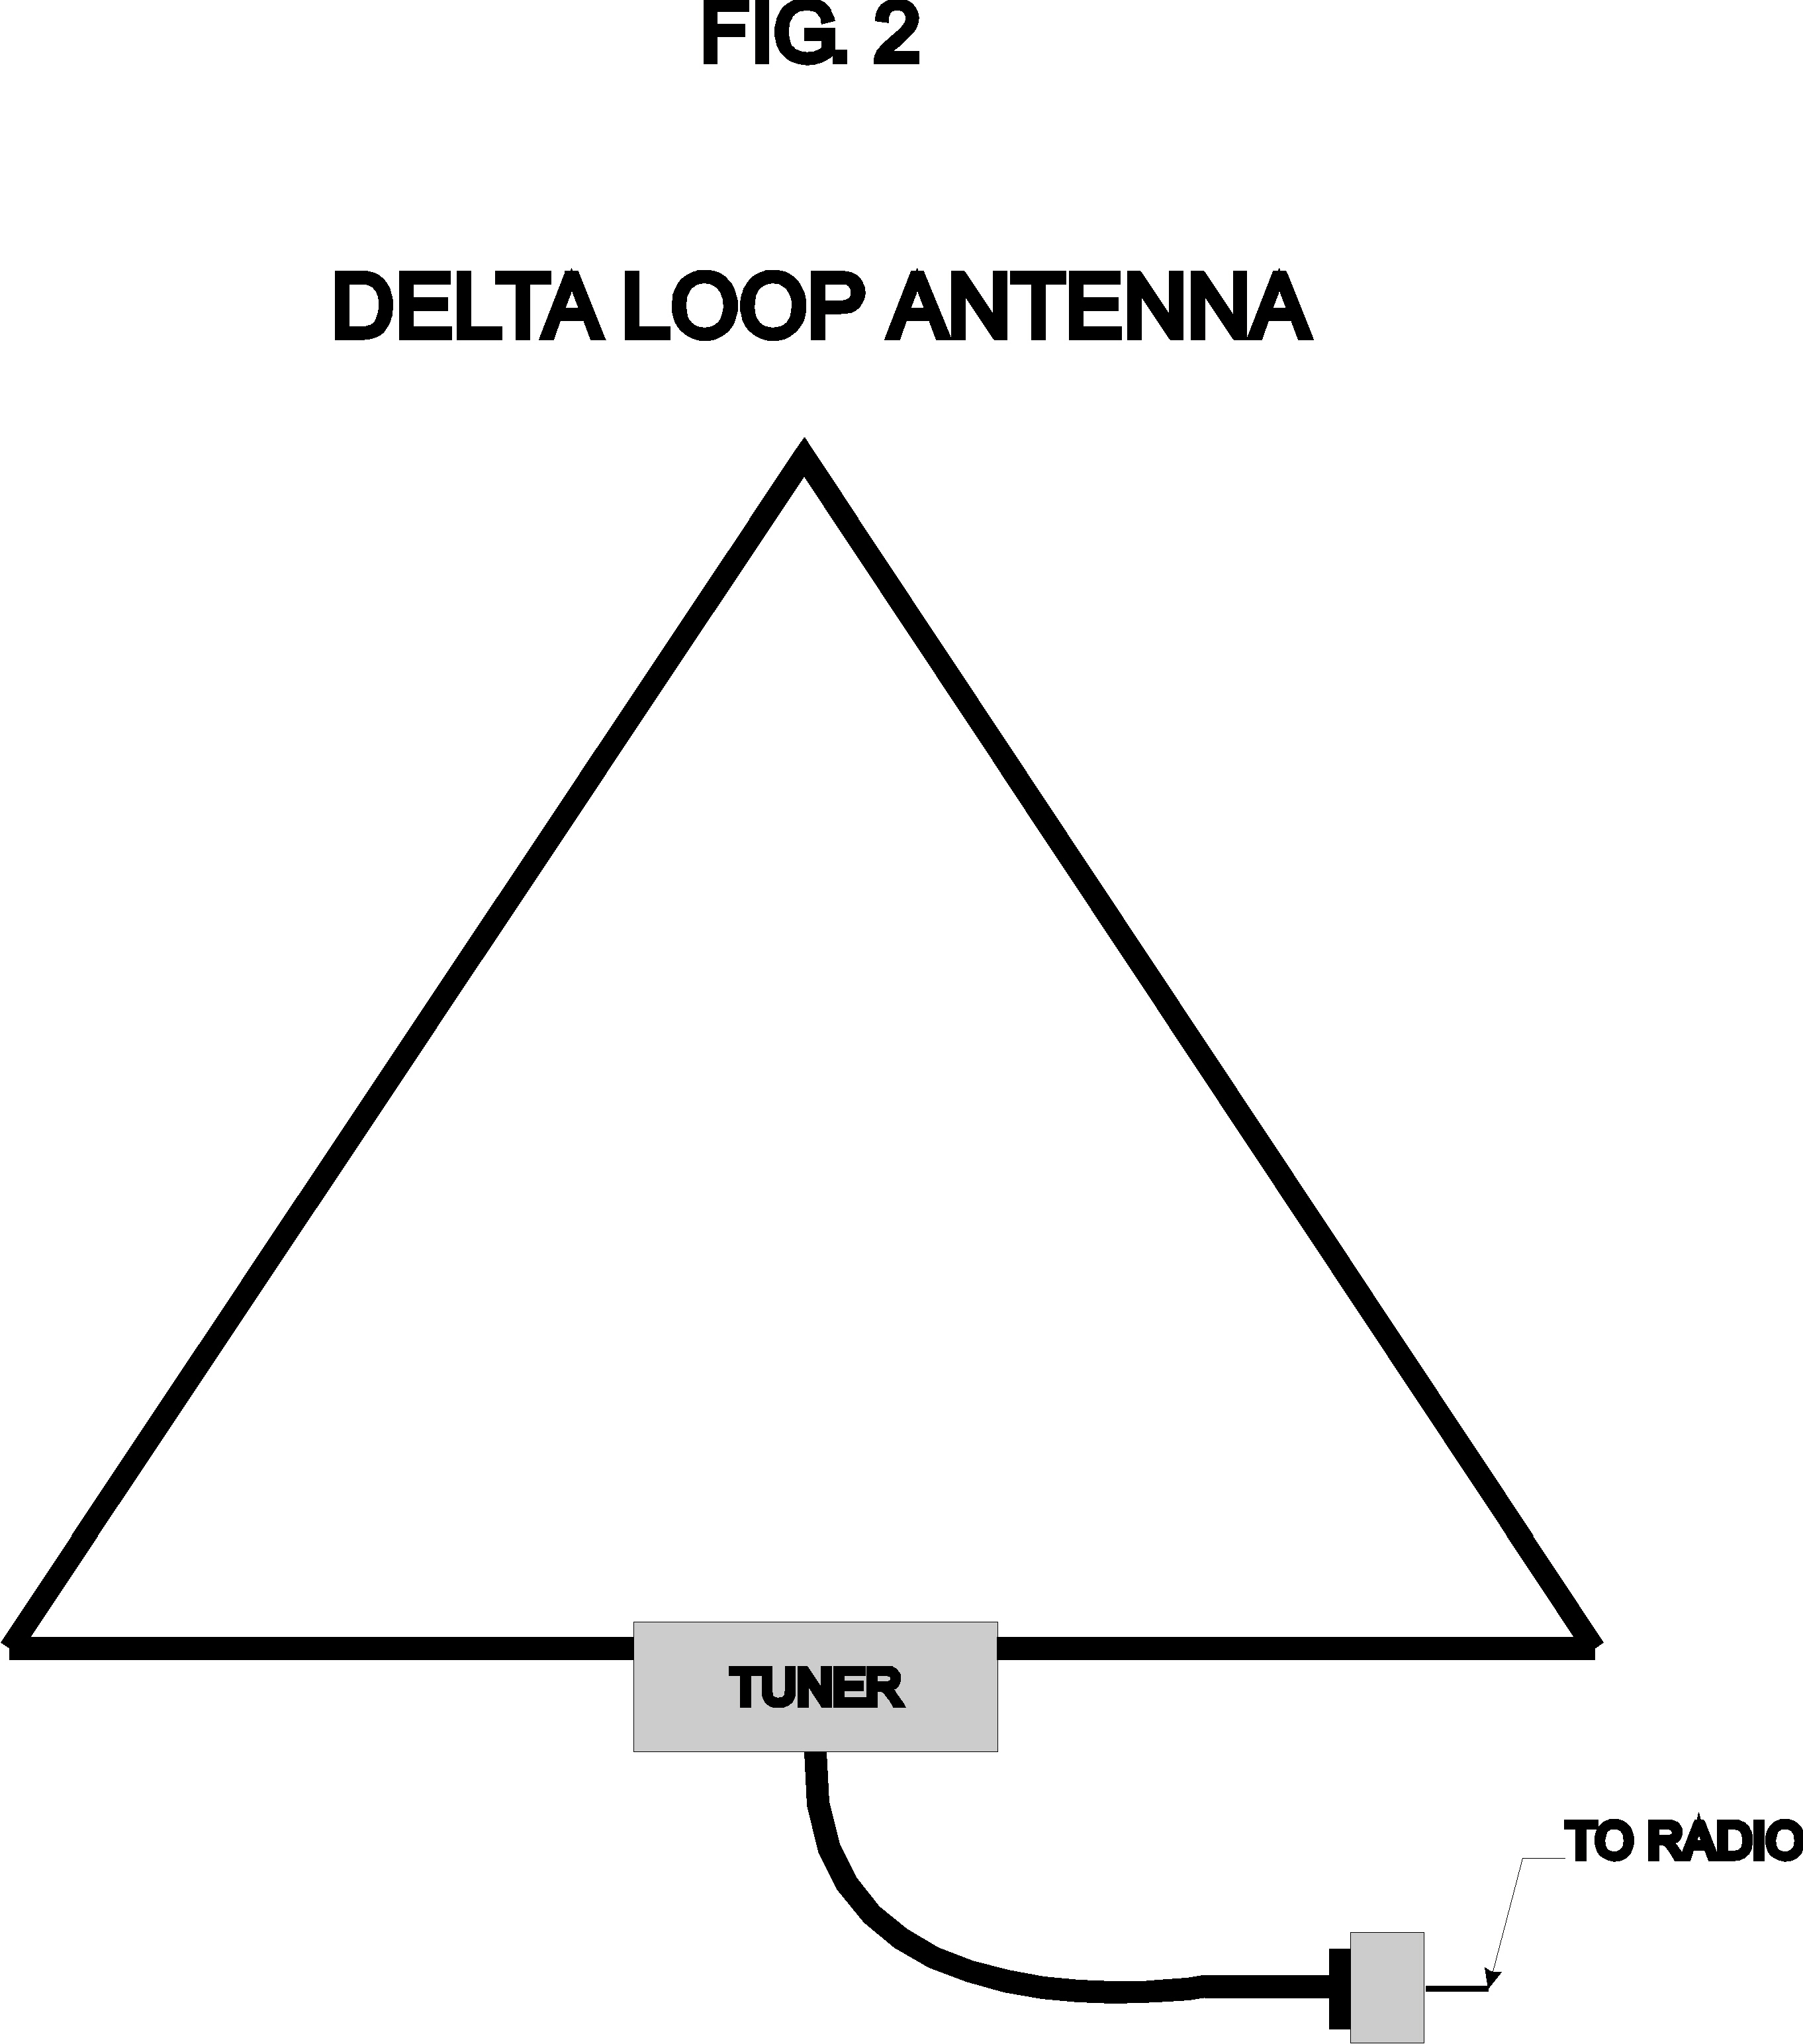 Delta loop antenna